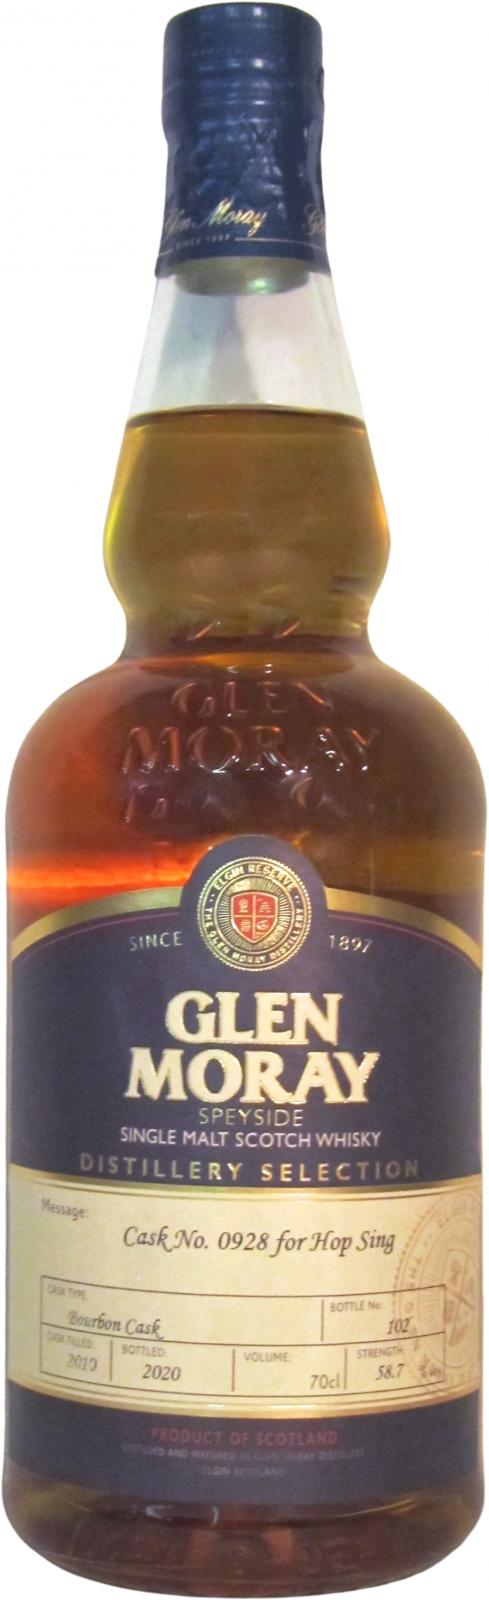 Glen Moray 2010 Hand Bottled at the Distillery Bourbon Cask #928 58.7% 700ml